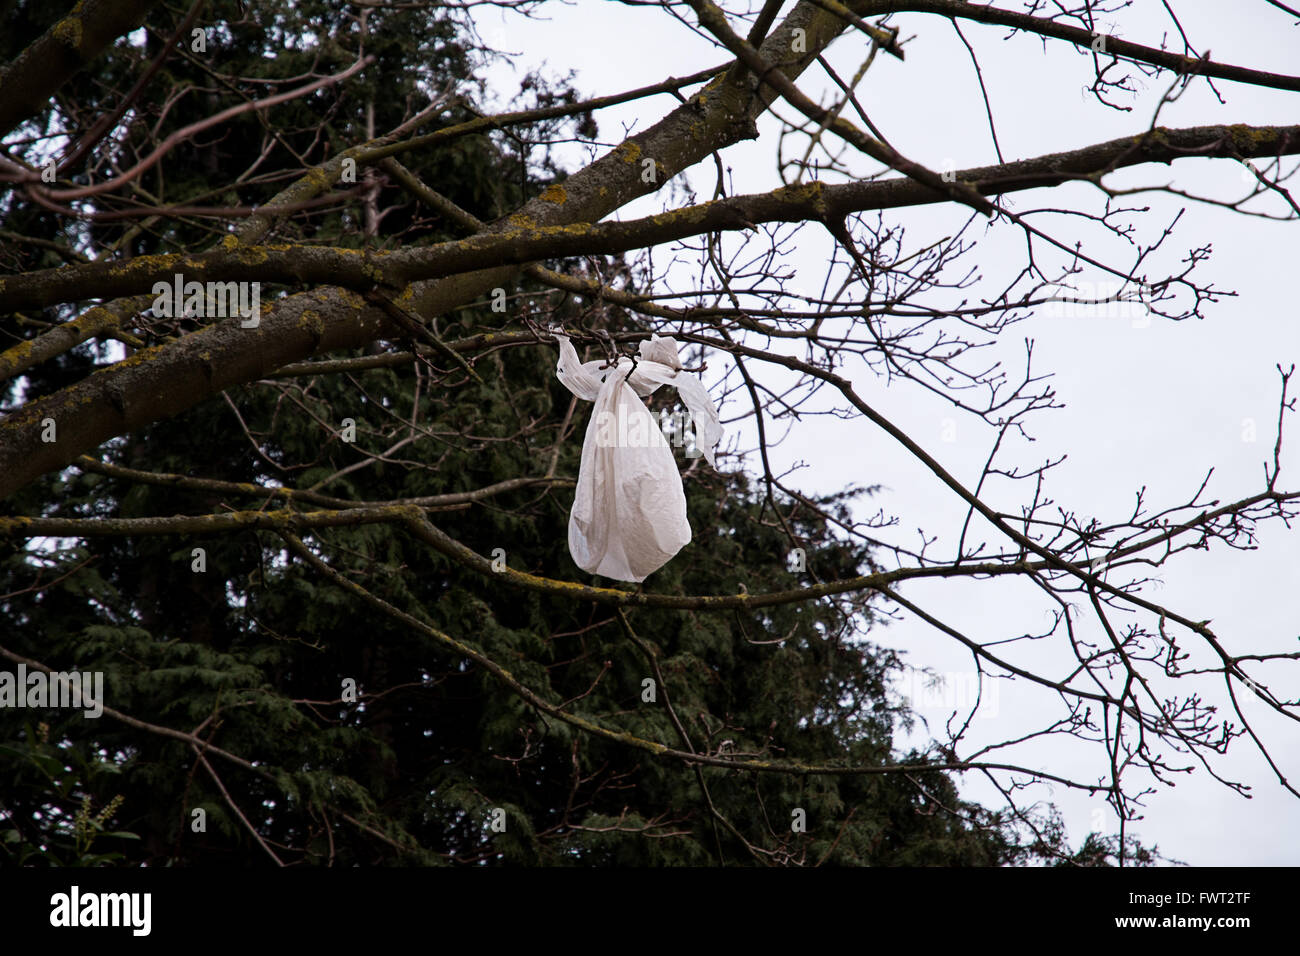 Un sac plastique pris dans les branches d'un arbre Photo Stock - Alamy